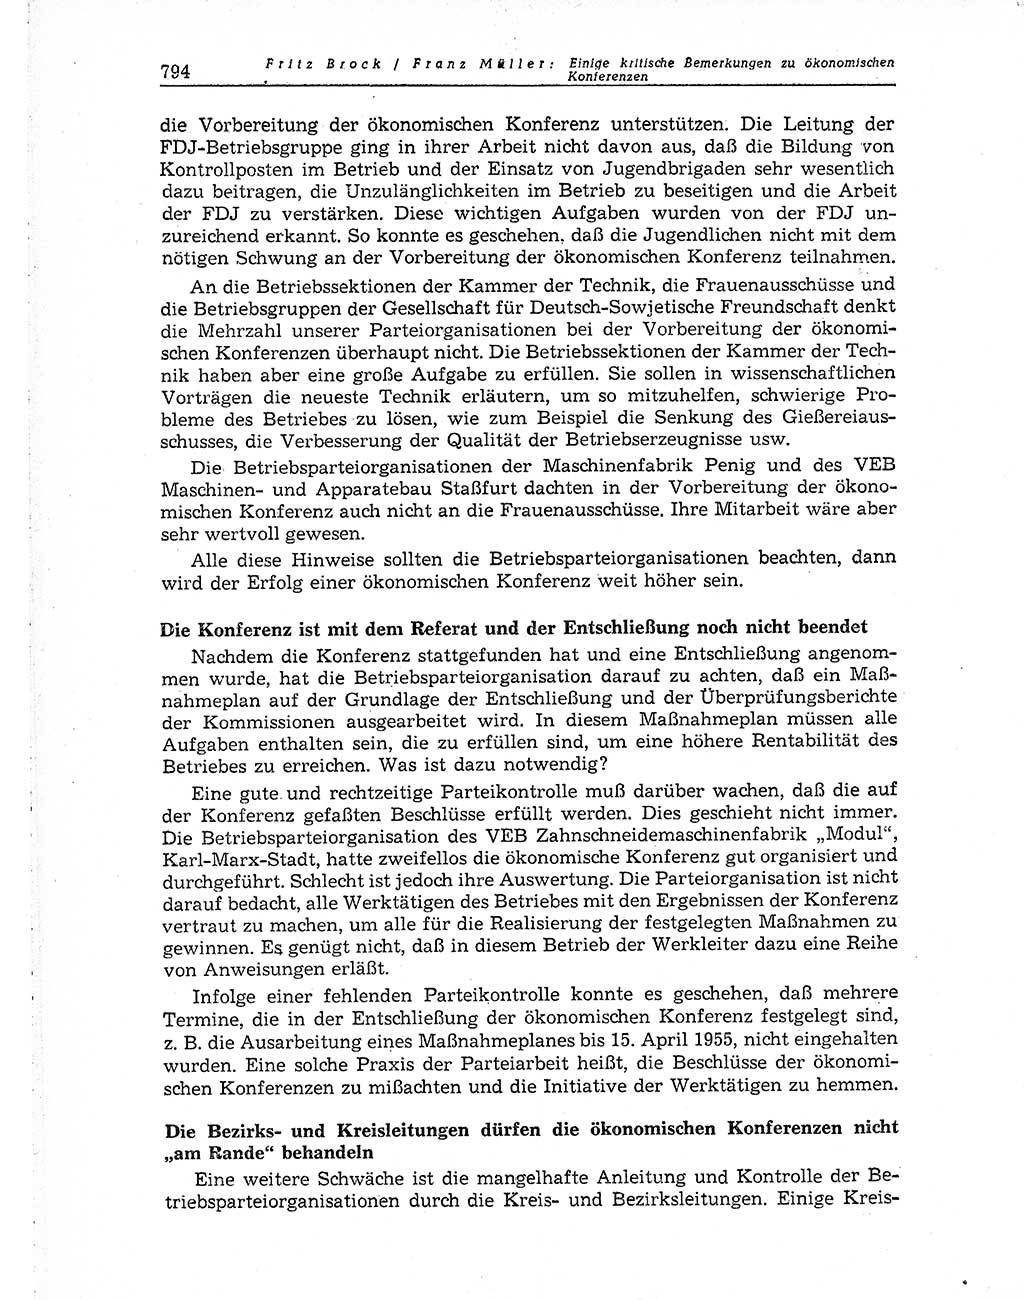 Neuer Weg (NW), Organ des Zentralkomitees (ZK) der SED (Sozialistische Einheitspartei Deutschlands) für Fragen des Parteiaufbaus und des Parteilebens, 10. Jahrgang [Deutsche Demokratische Republik (DDR)] 1955, Seite 794 (NW ZK SED DDR 1955, S. 794)